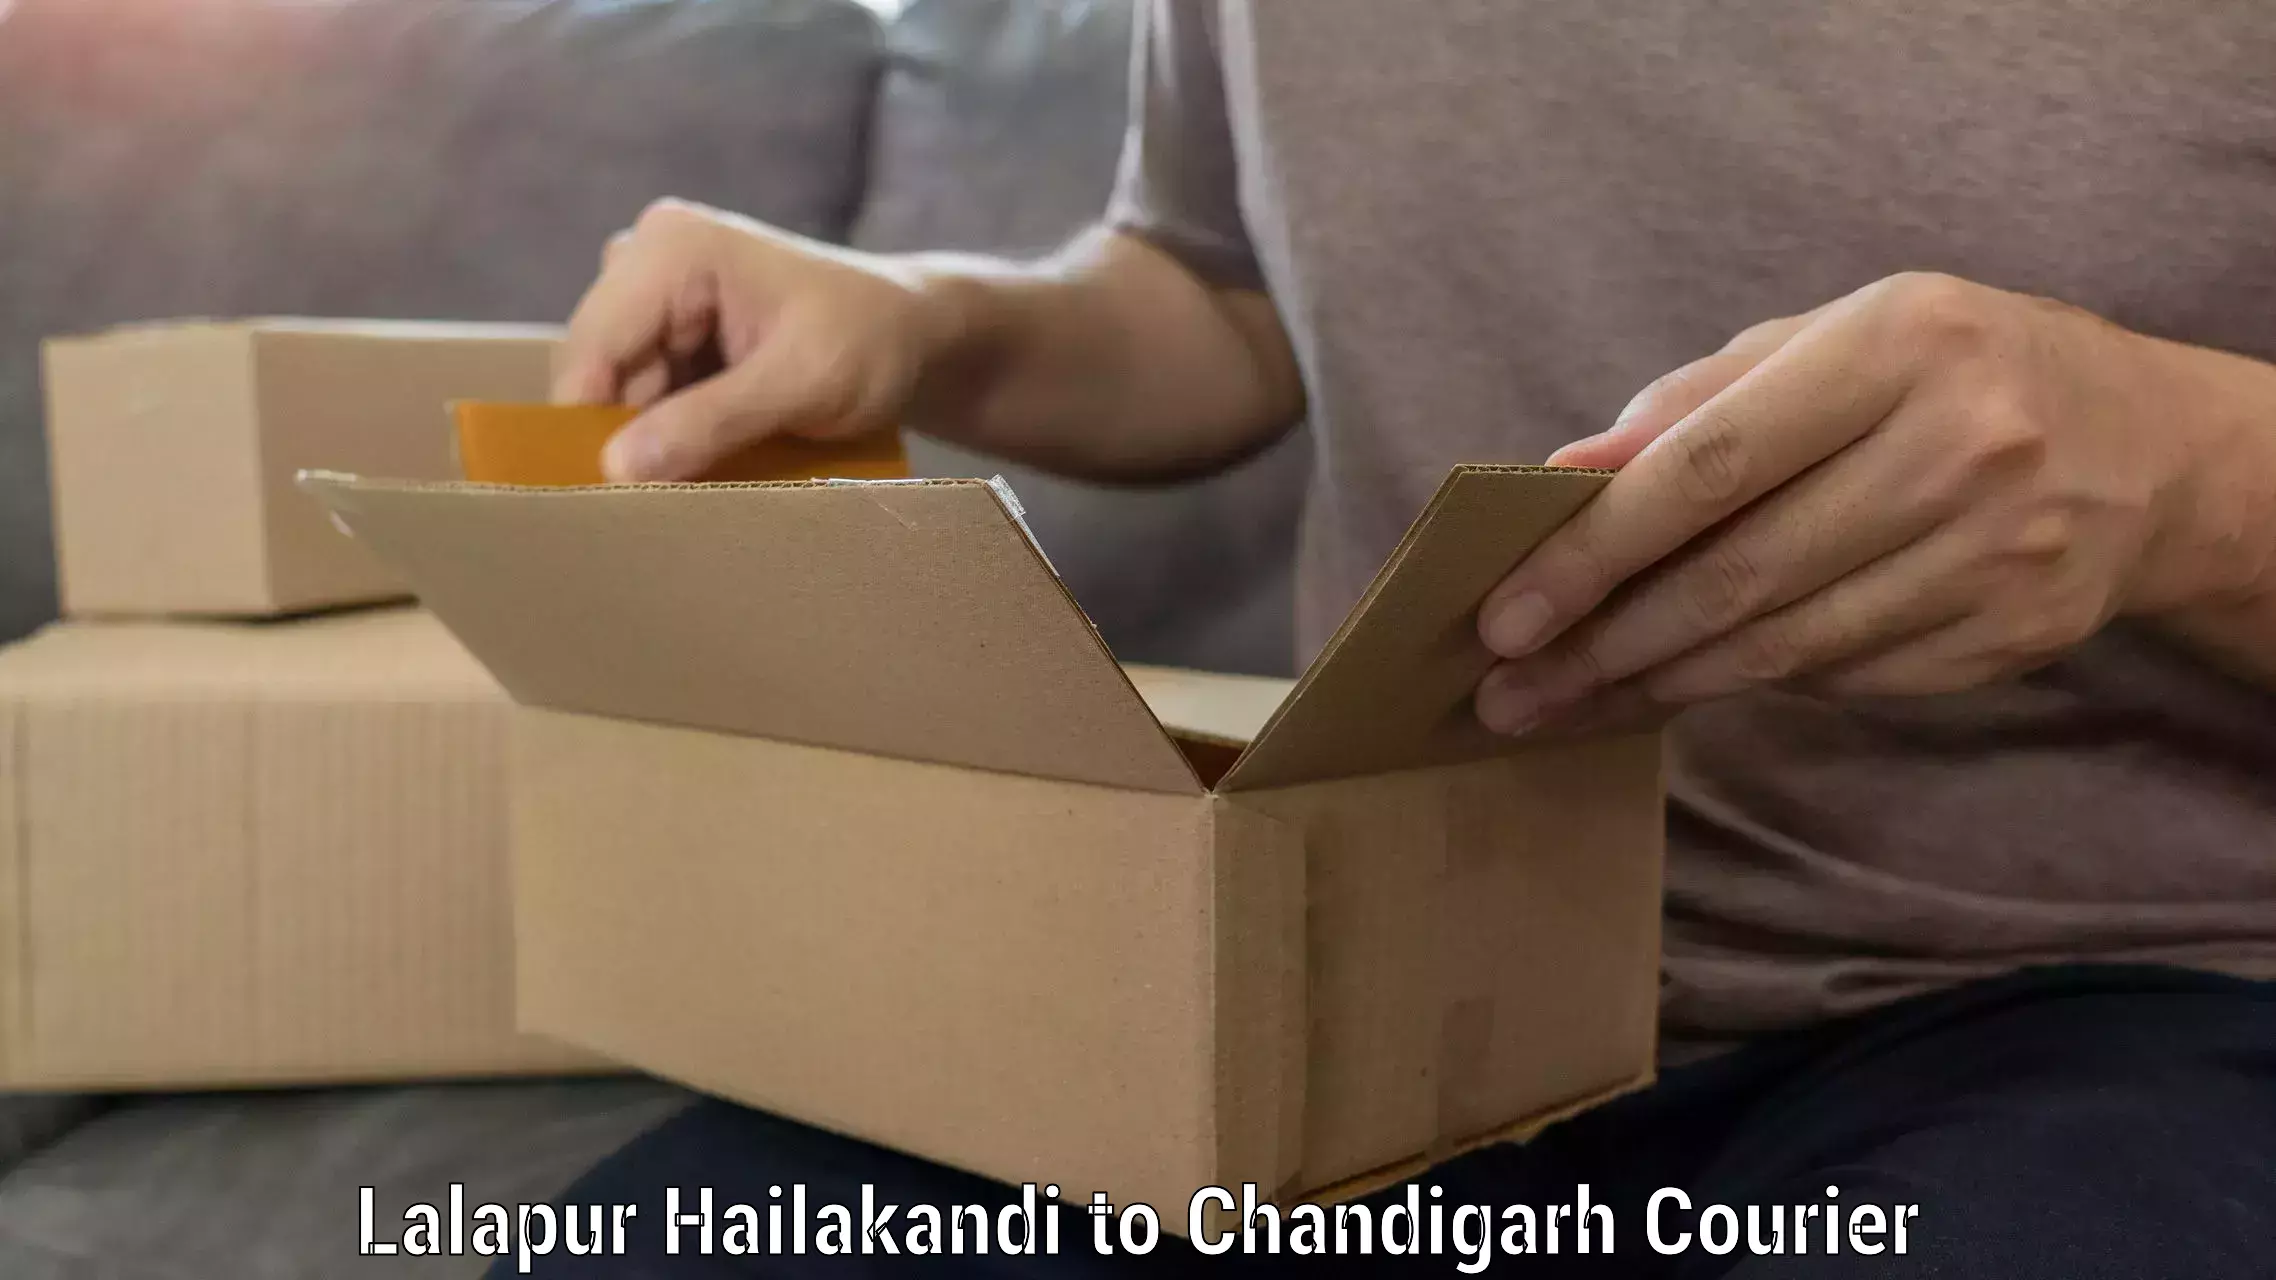 Expert goods movers Lalapur Hailakandi to Chandigarh